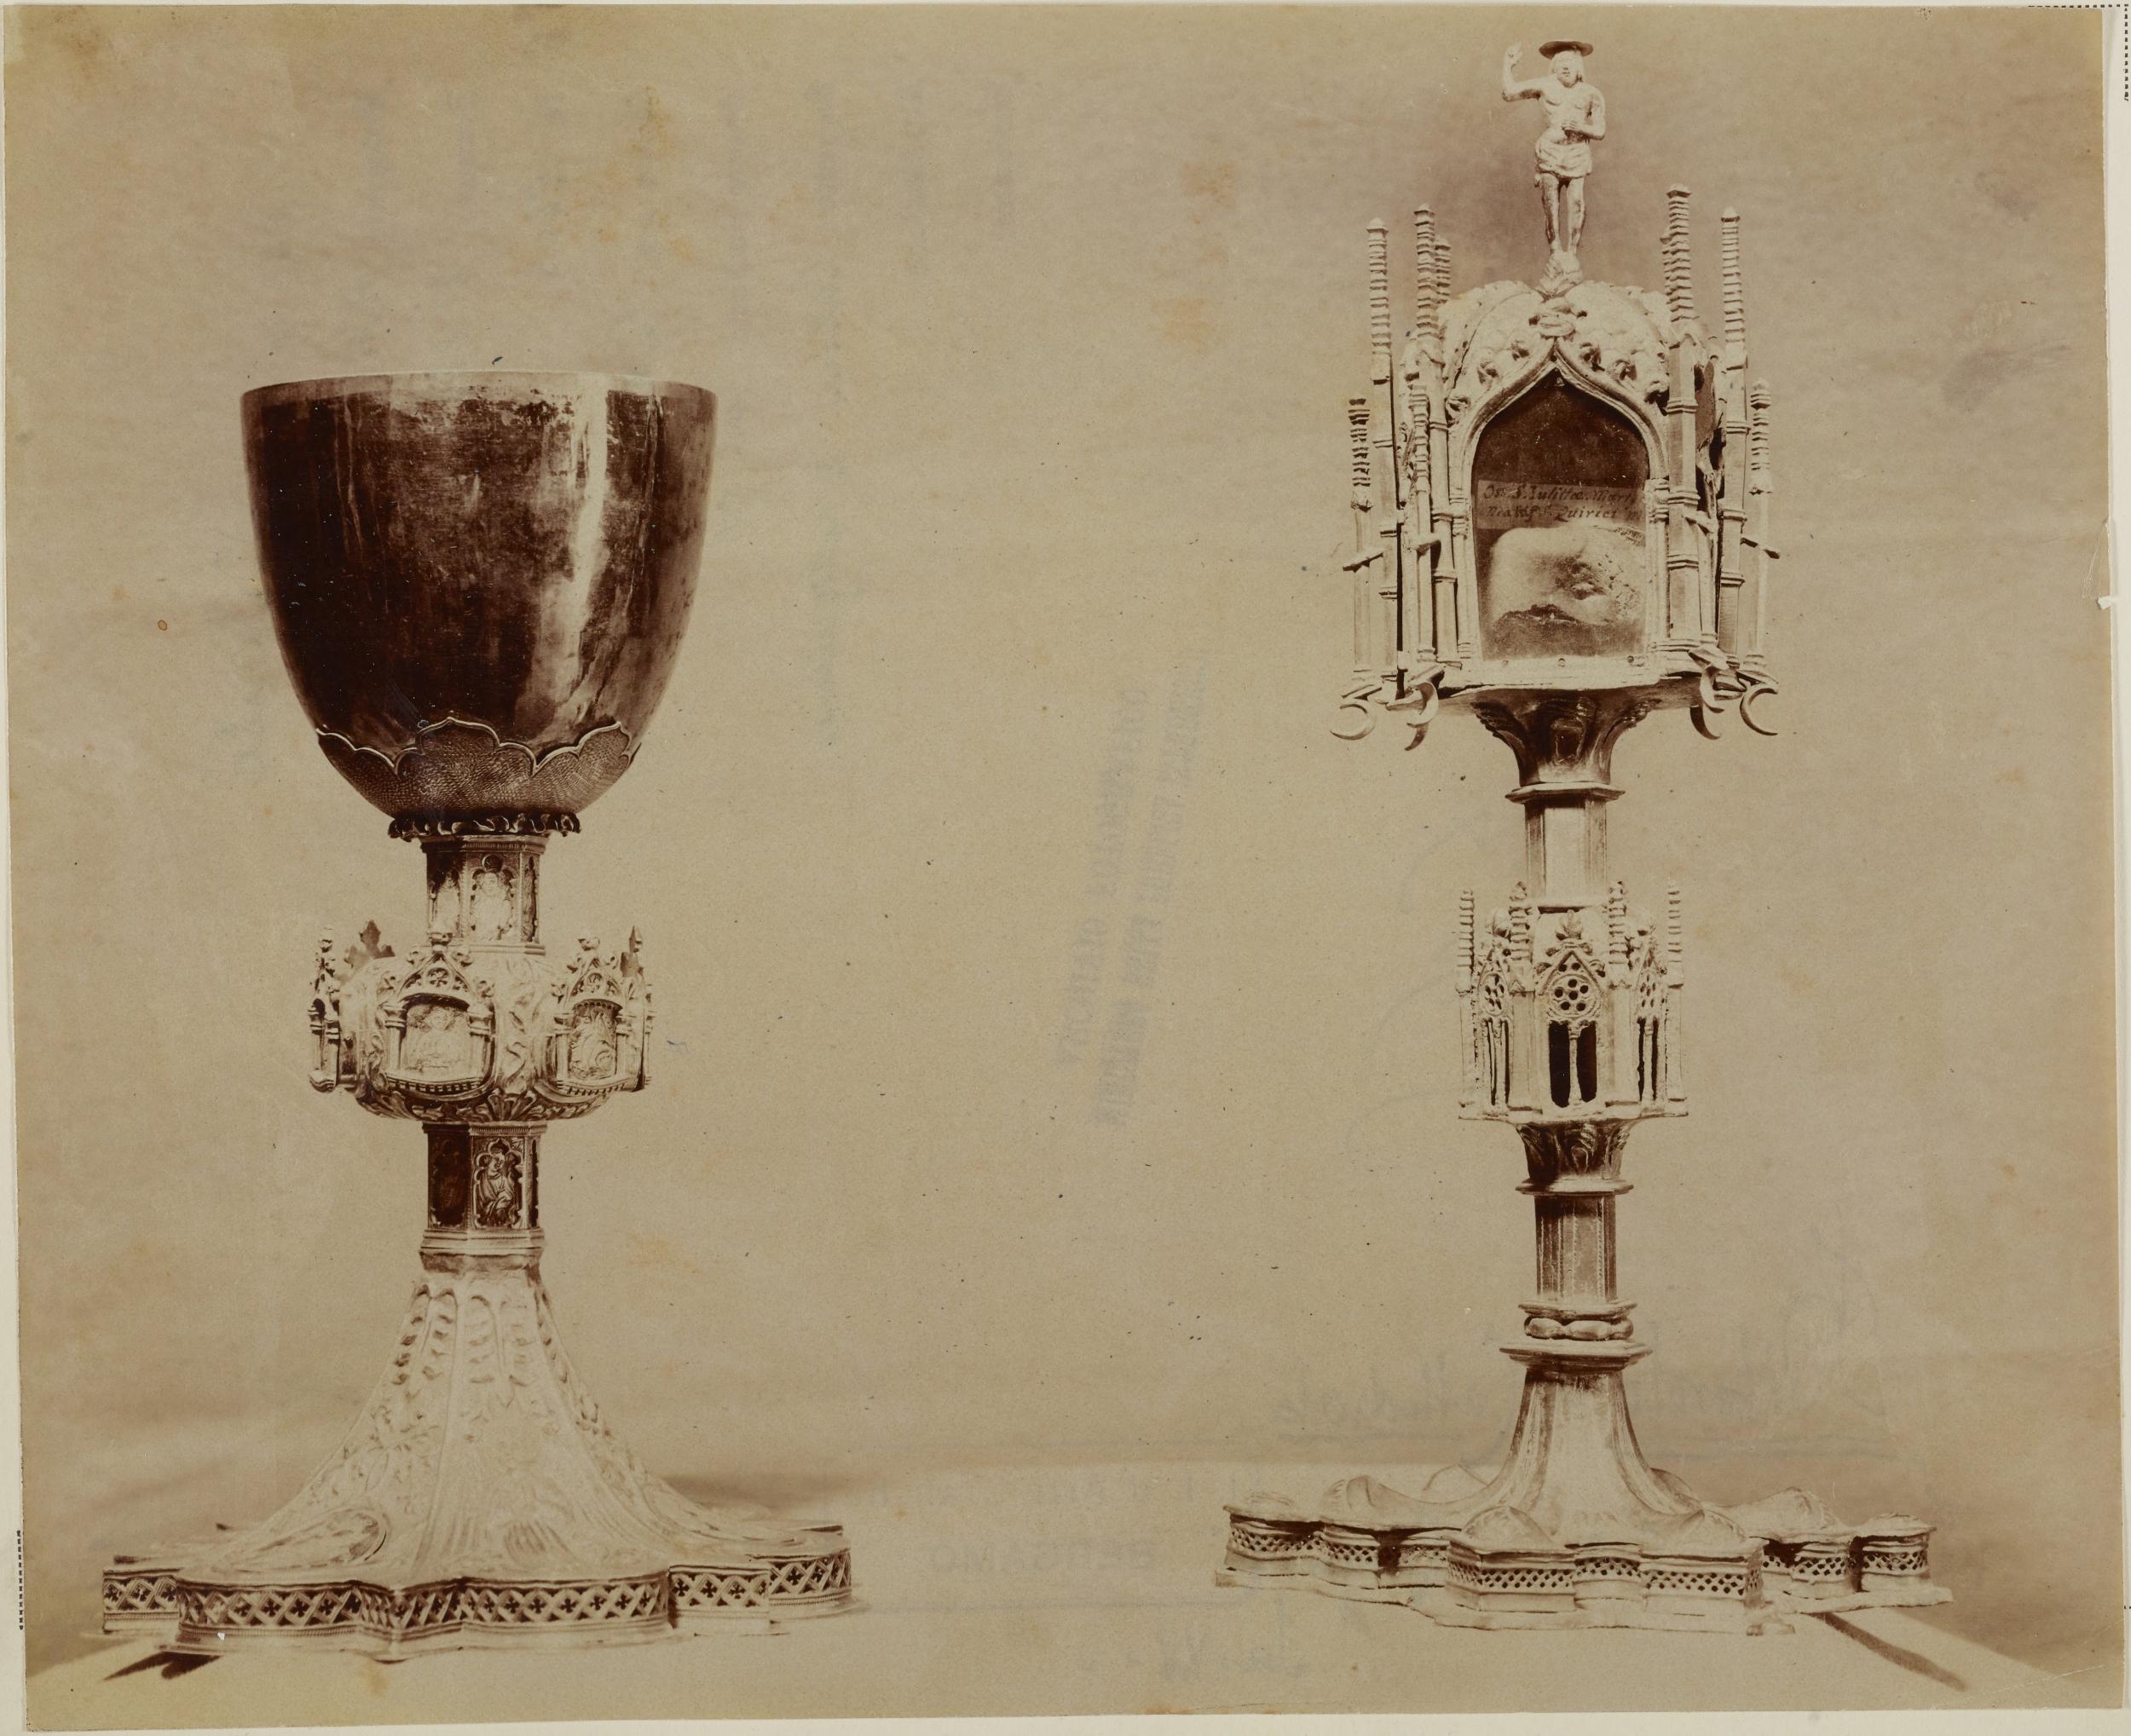 Fotografo non identificato, Bitonto - Cattedrale di S. Valentino, tesoro, calice da messa e reliquario, 1876-1900, albumina/carta, MPI137889